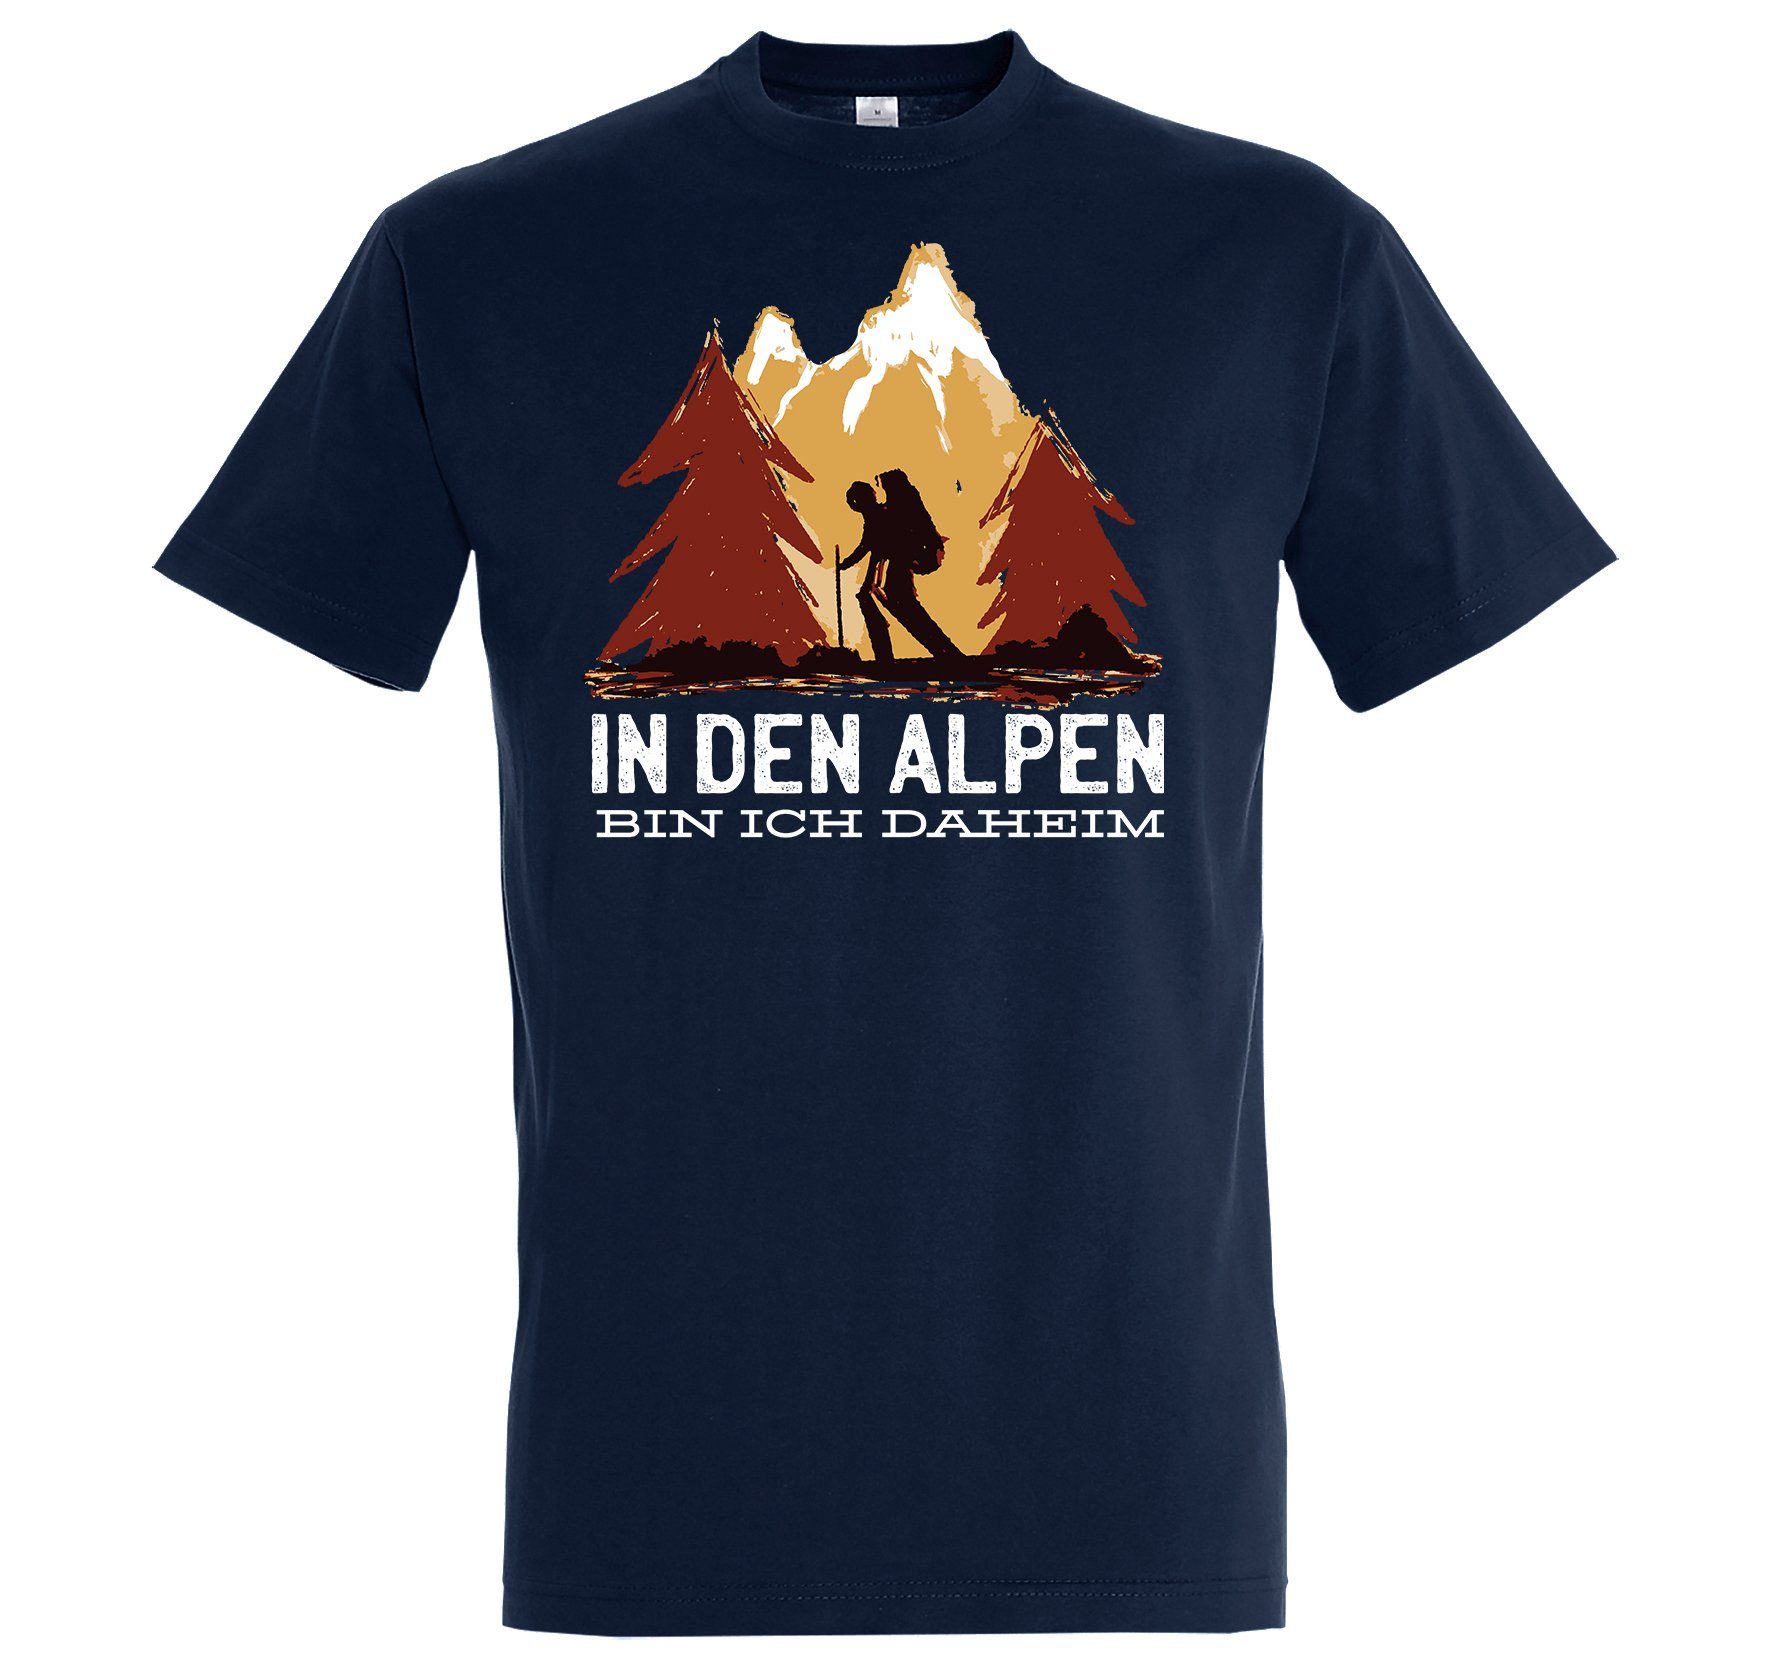 Youth Designz Daheim Shirt Ich In Alpen Den mit T-Shirt Navyblau trendigem Bin Frontprint Herren